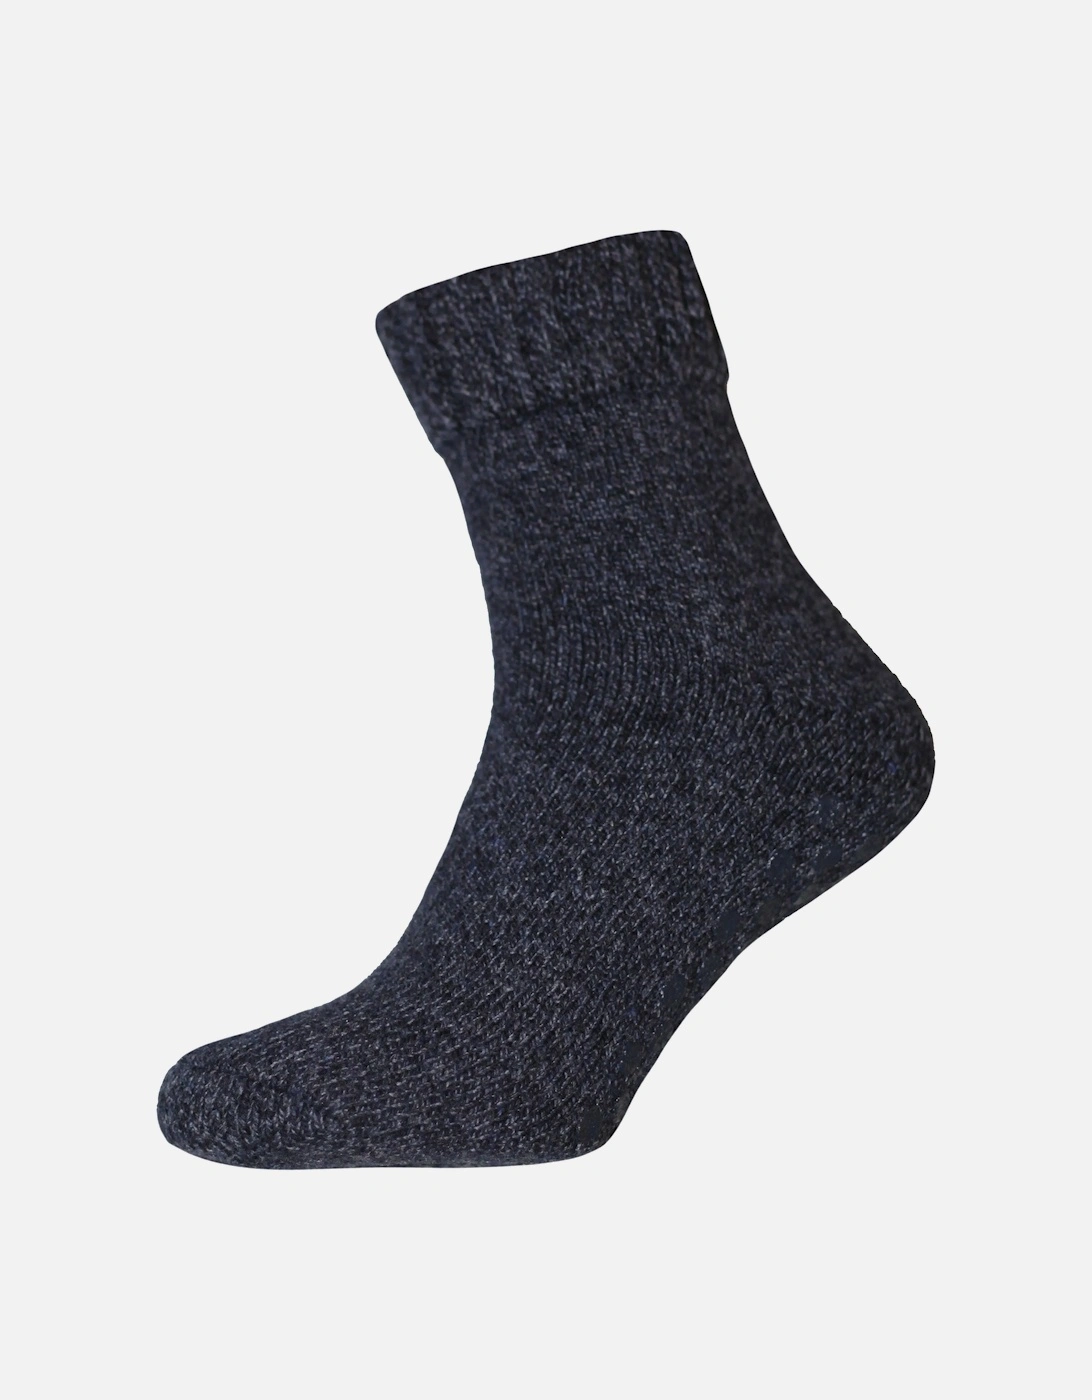 Mens Thermal Non Skid Slipper Socks, 3 of 2